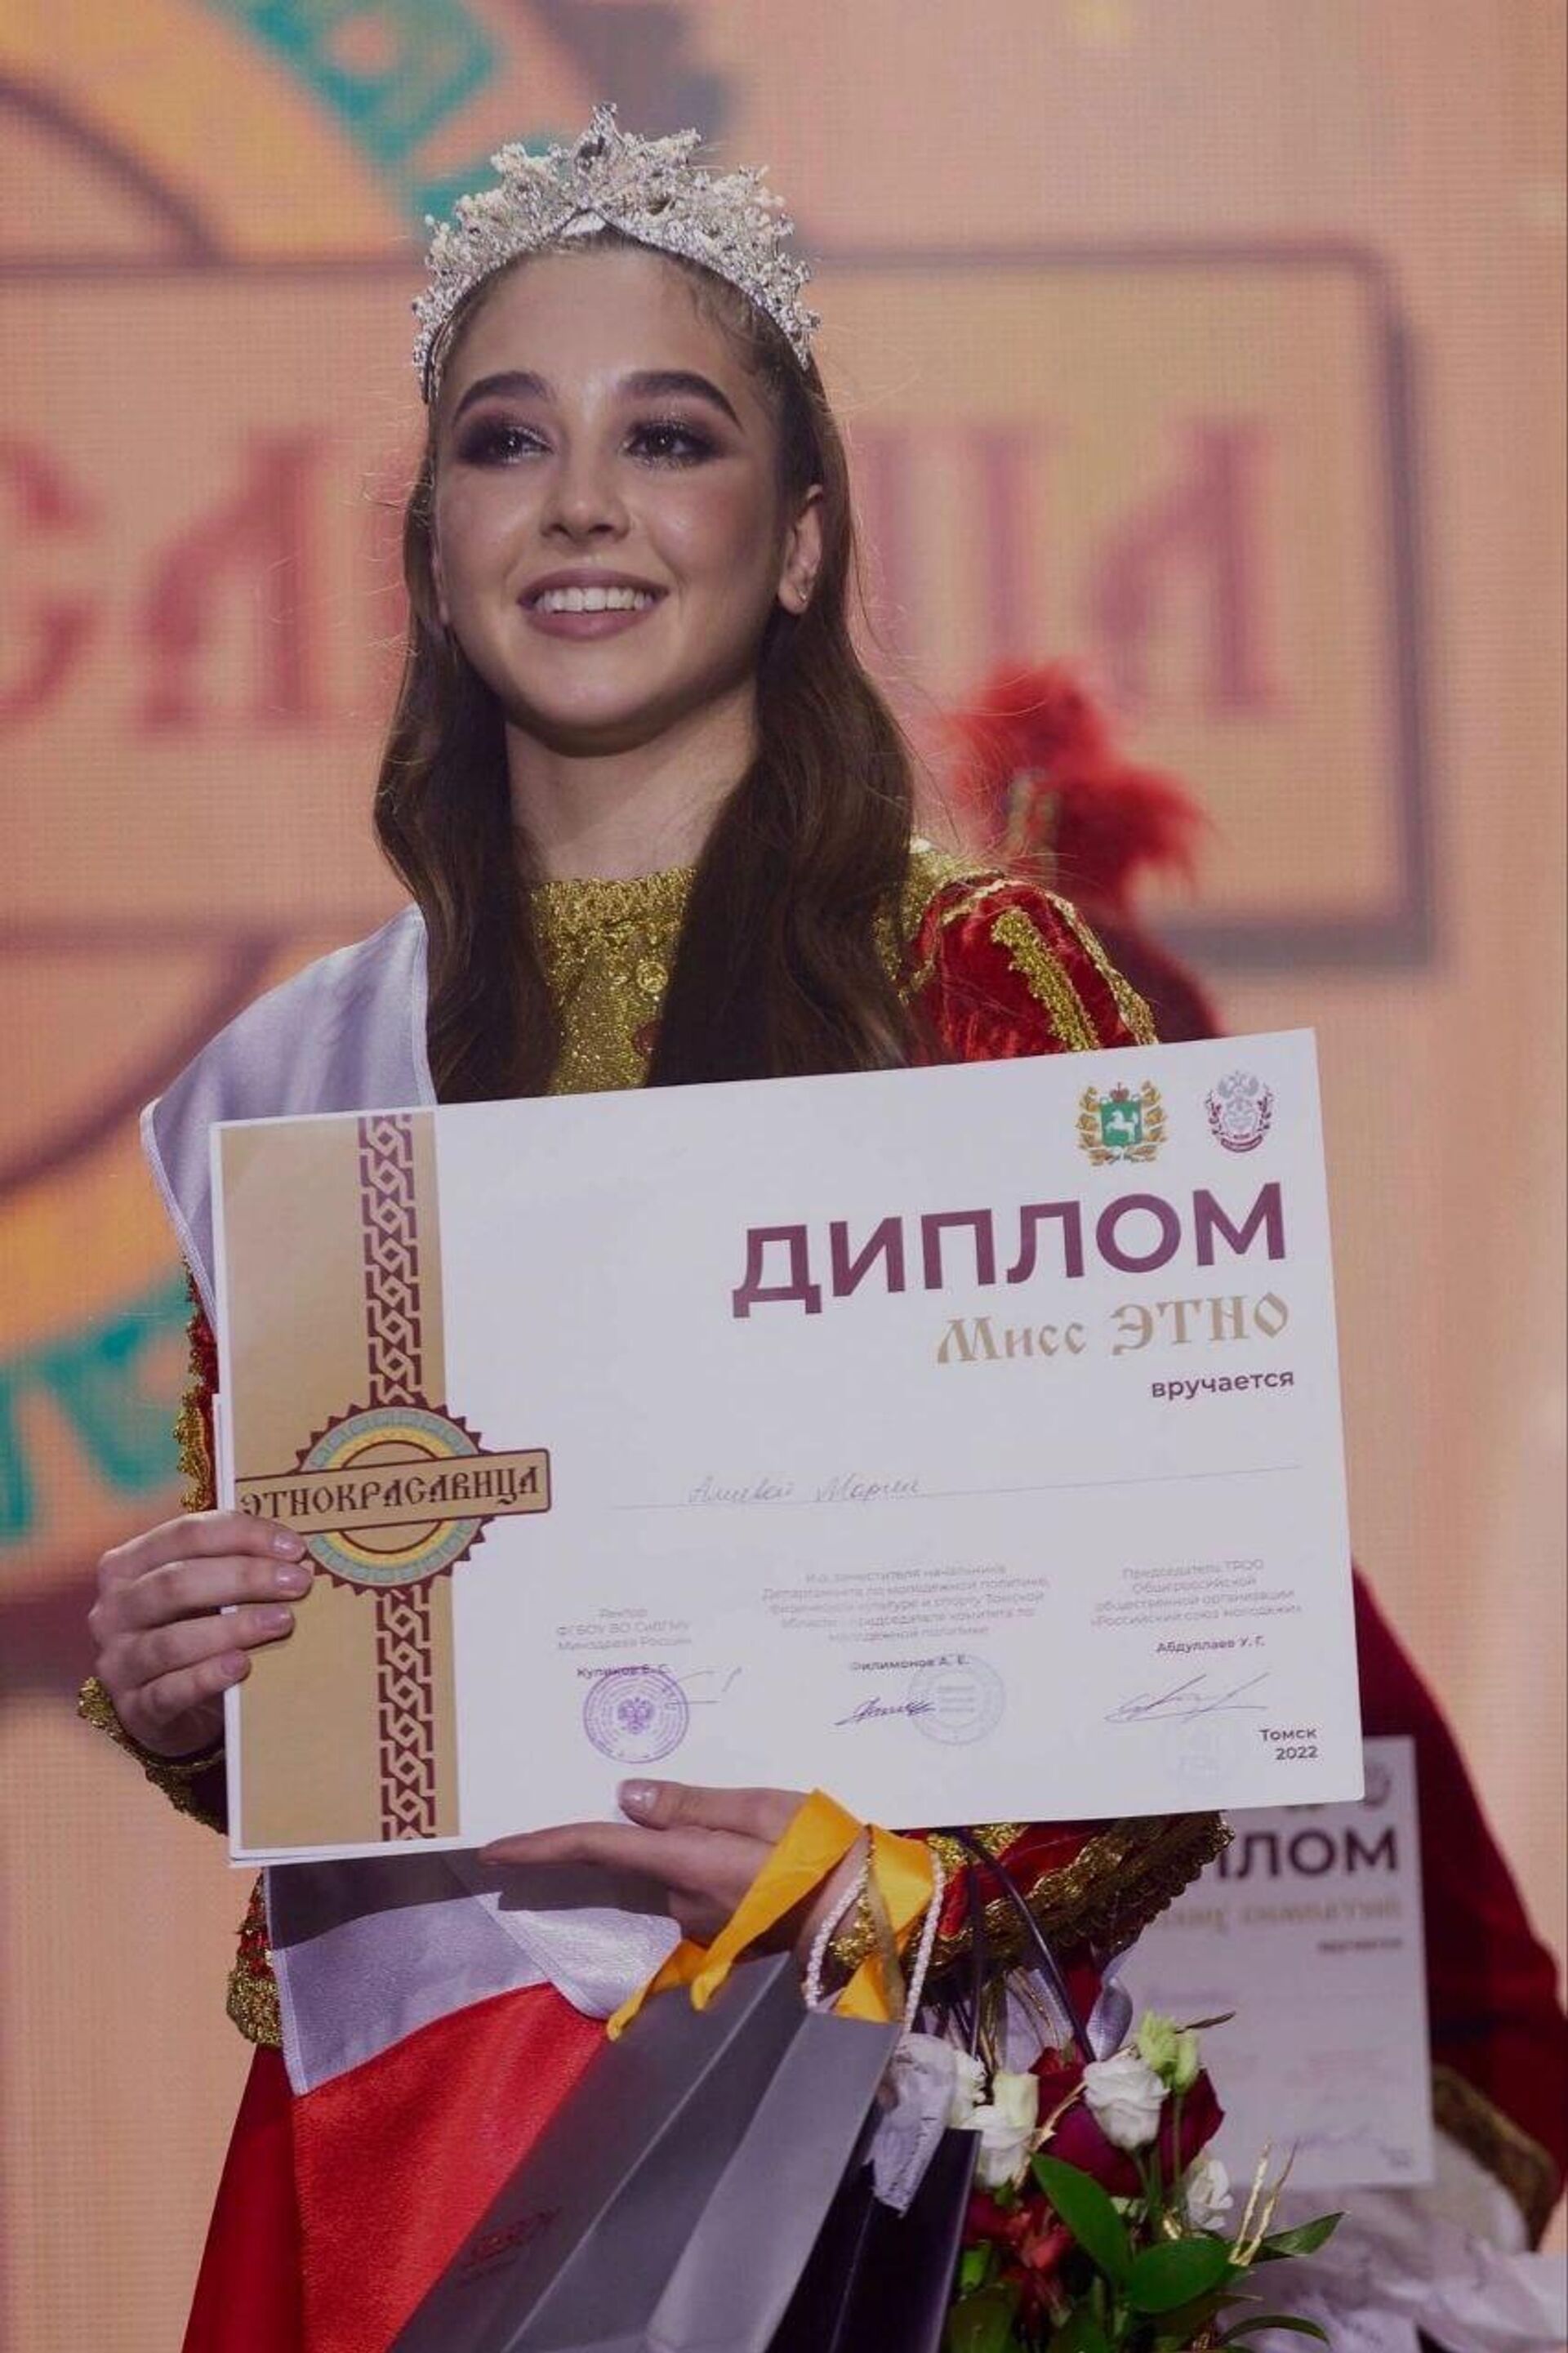 Азербайджанка Мария Алиева на днях стала победительницей конкурса красоты Этнокрасавица - Sputnik Азербайджан, 1920, 09.12.2022